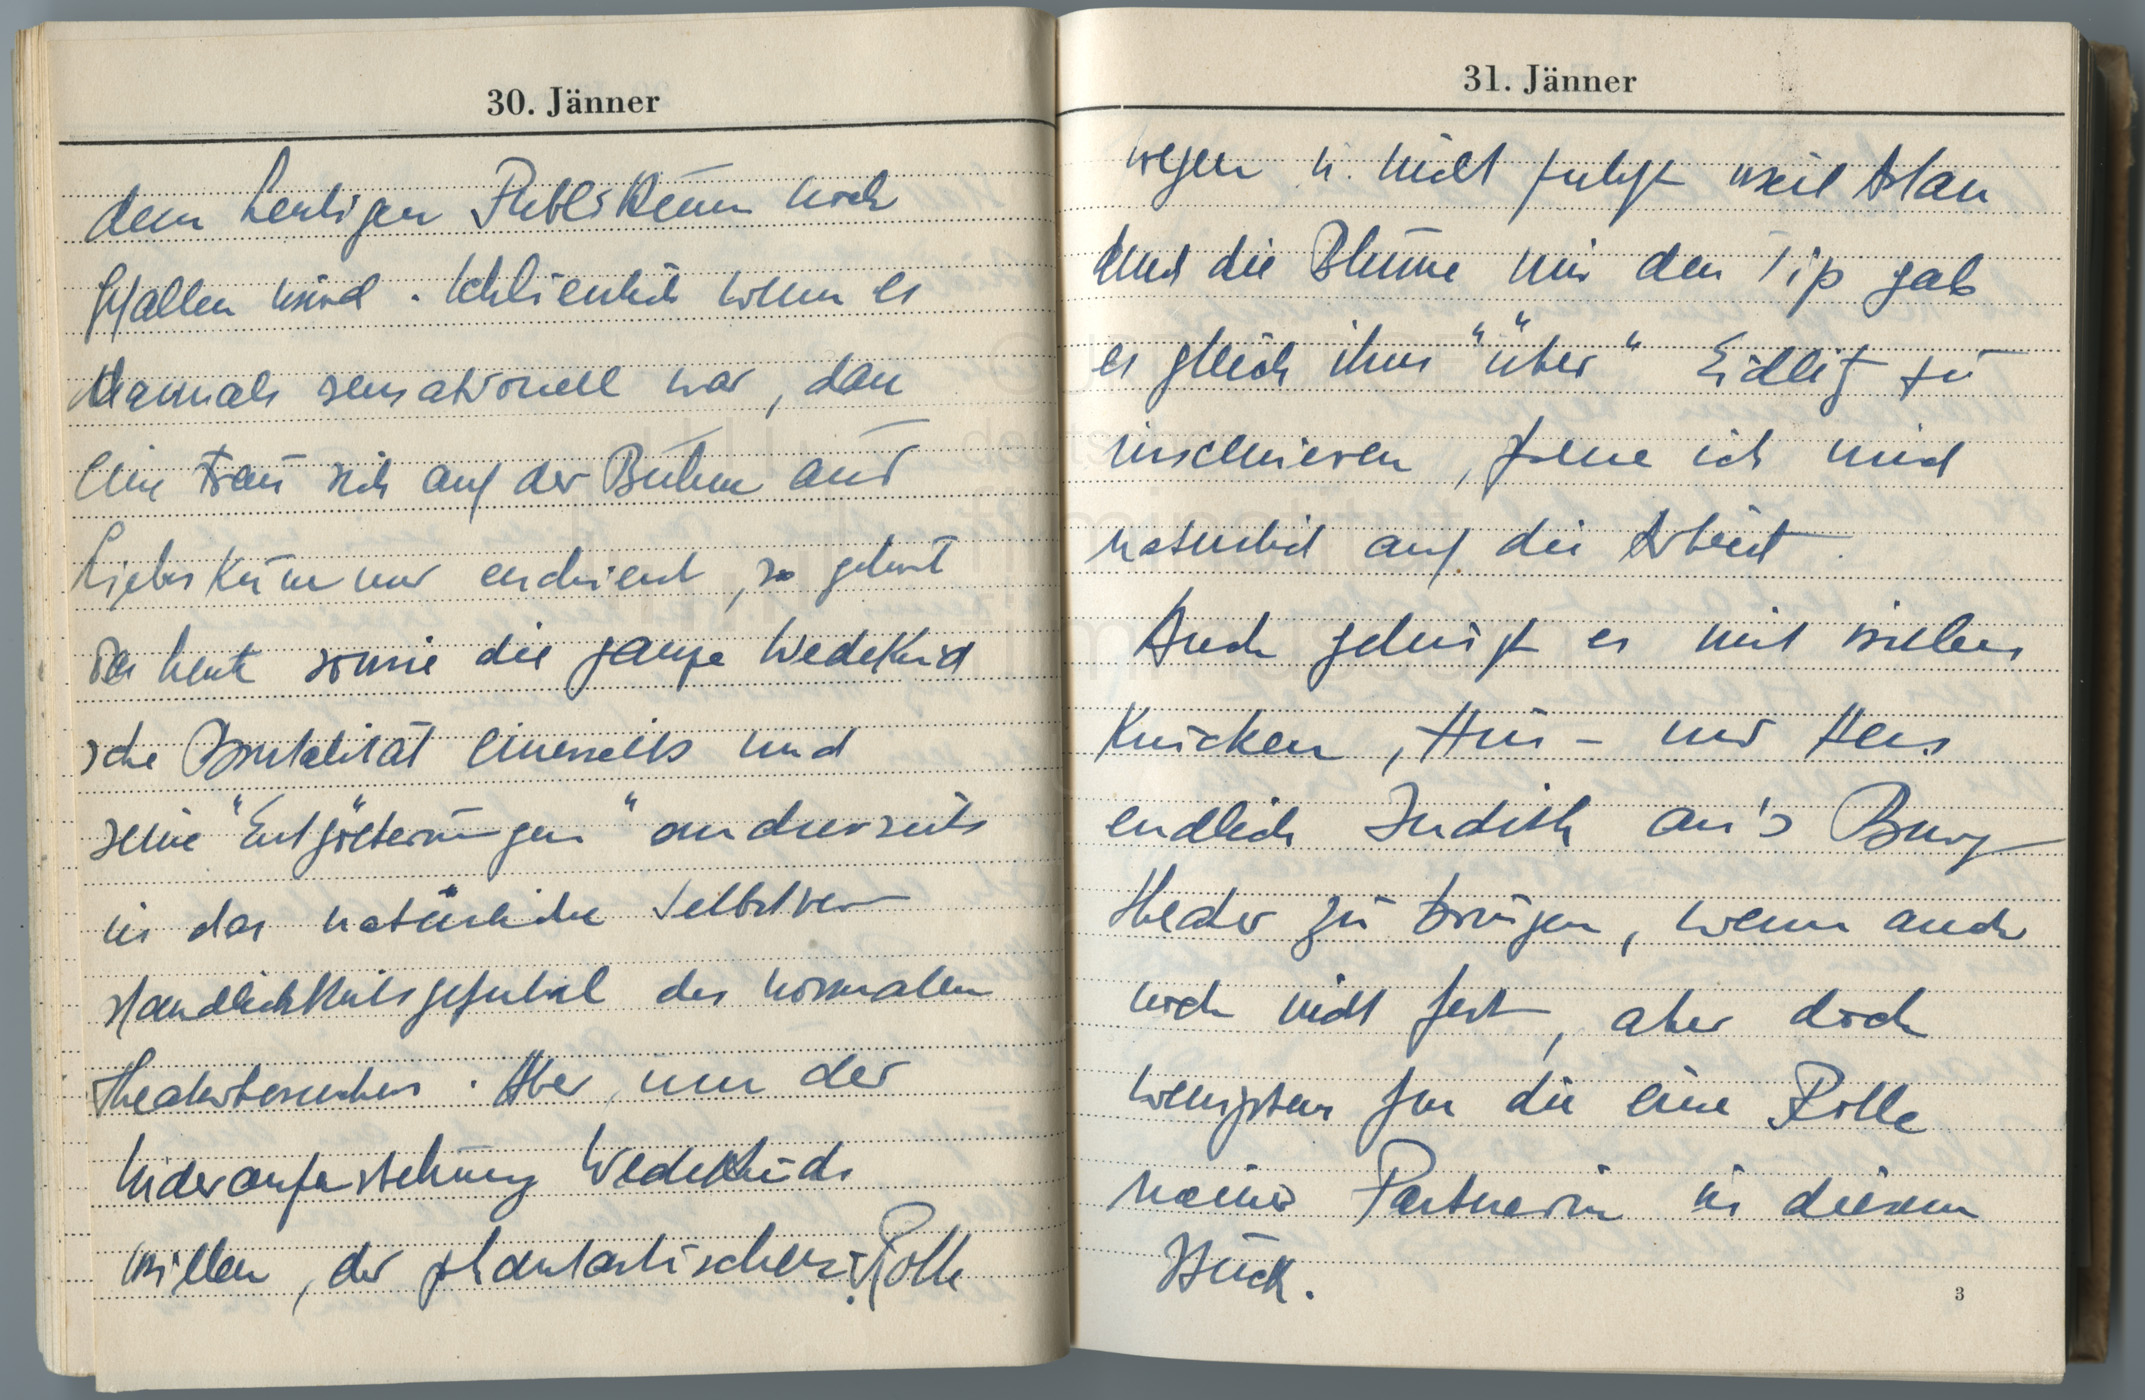 Tagebucheintragungen vom 29.1. bis 31.1.1947